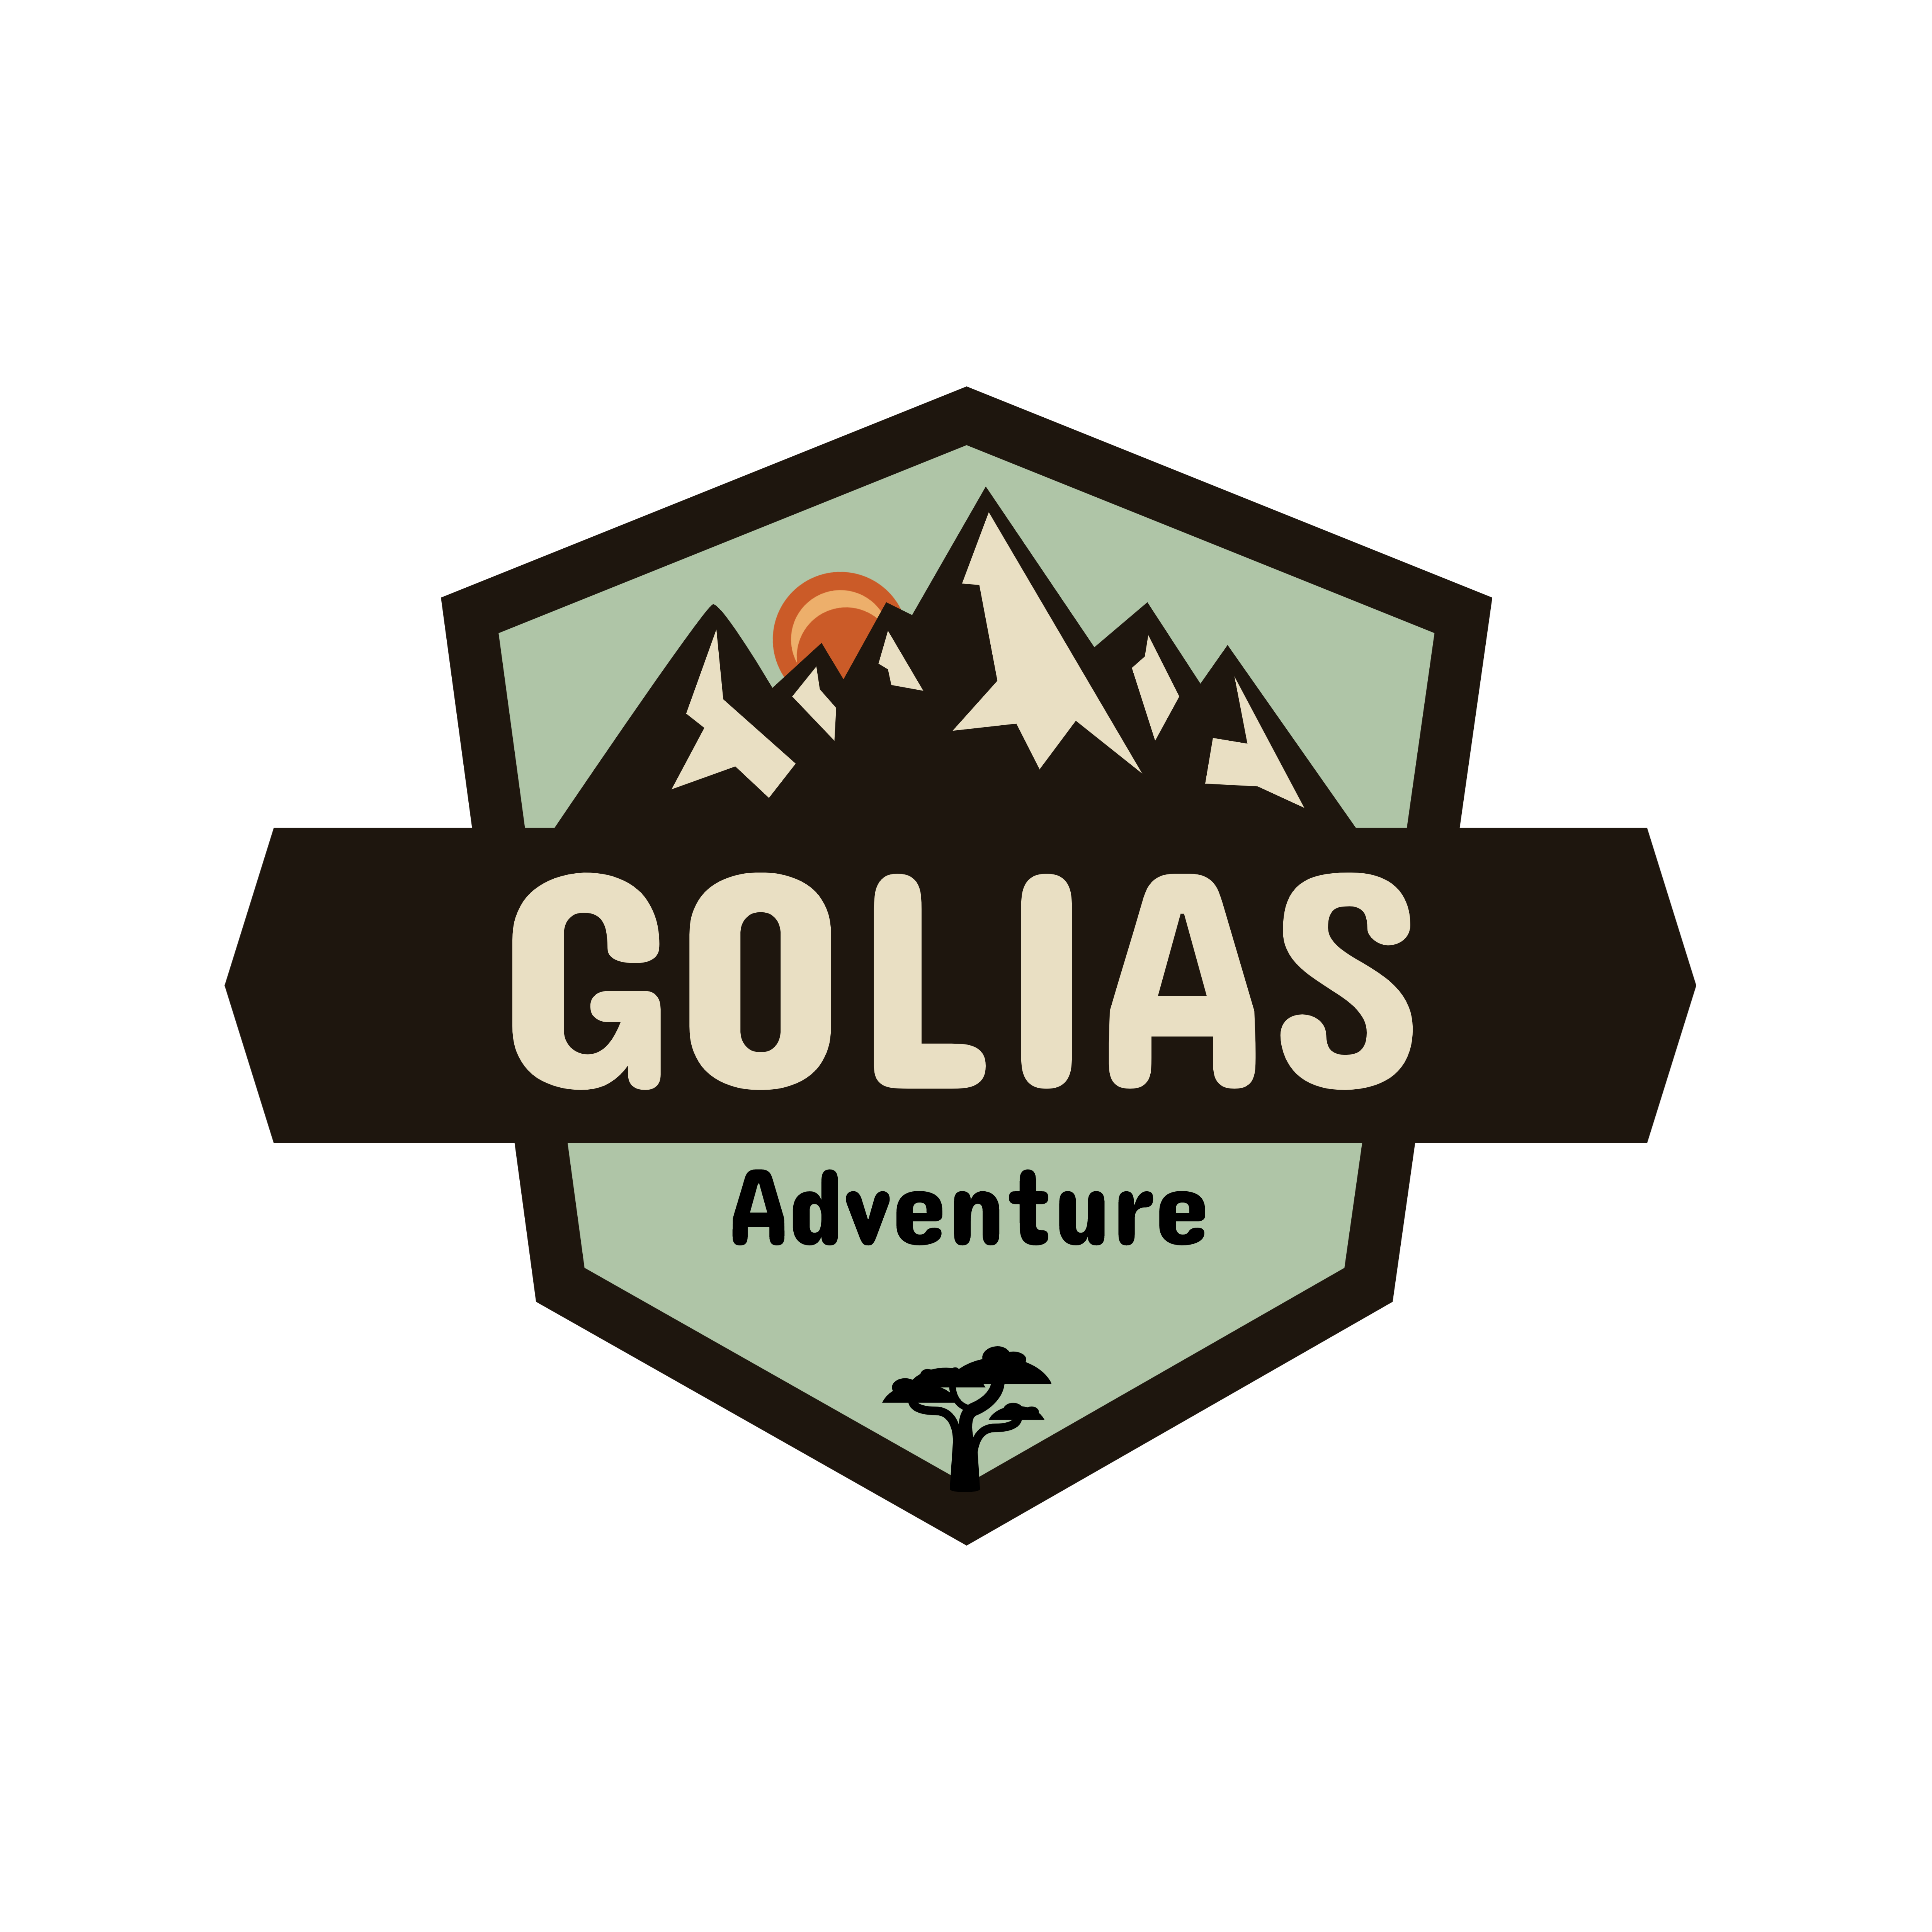 Golias Adventure